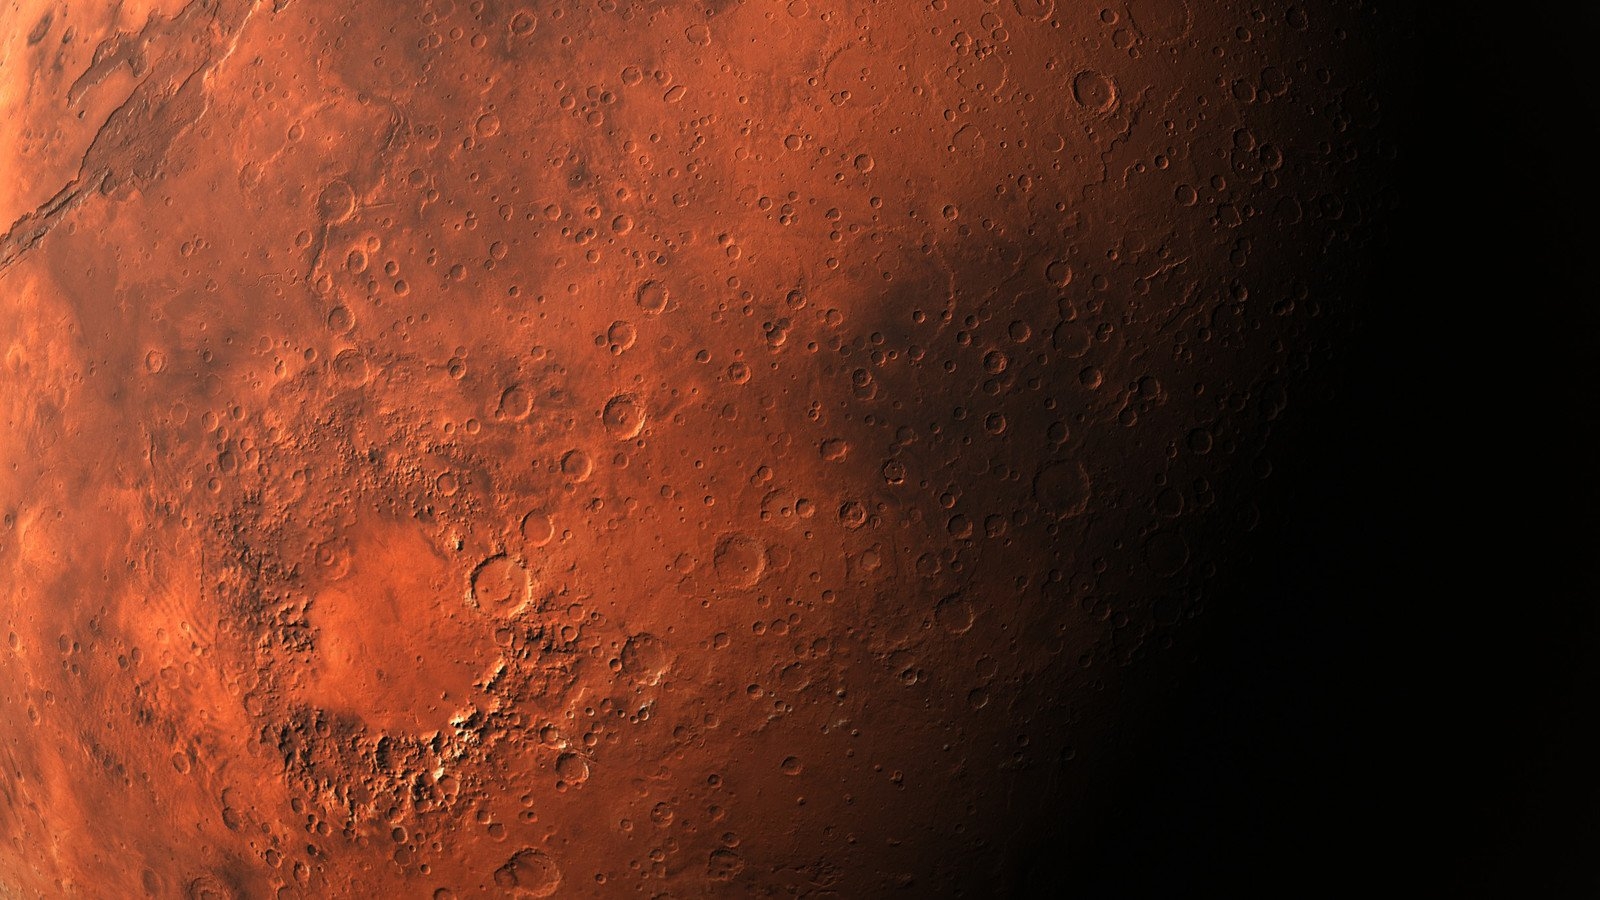 Цвет поверхности Марса планеты